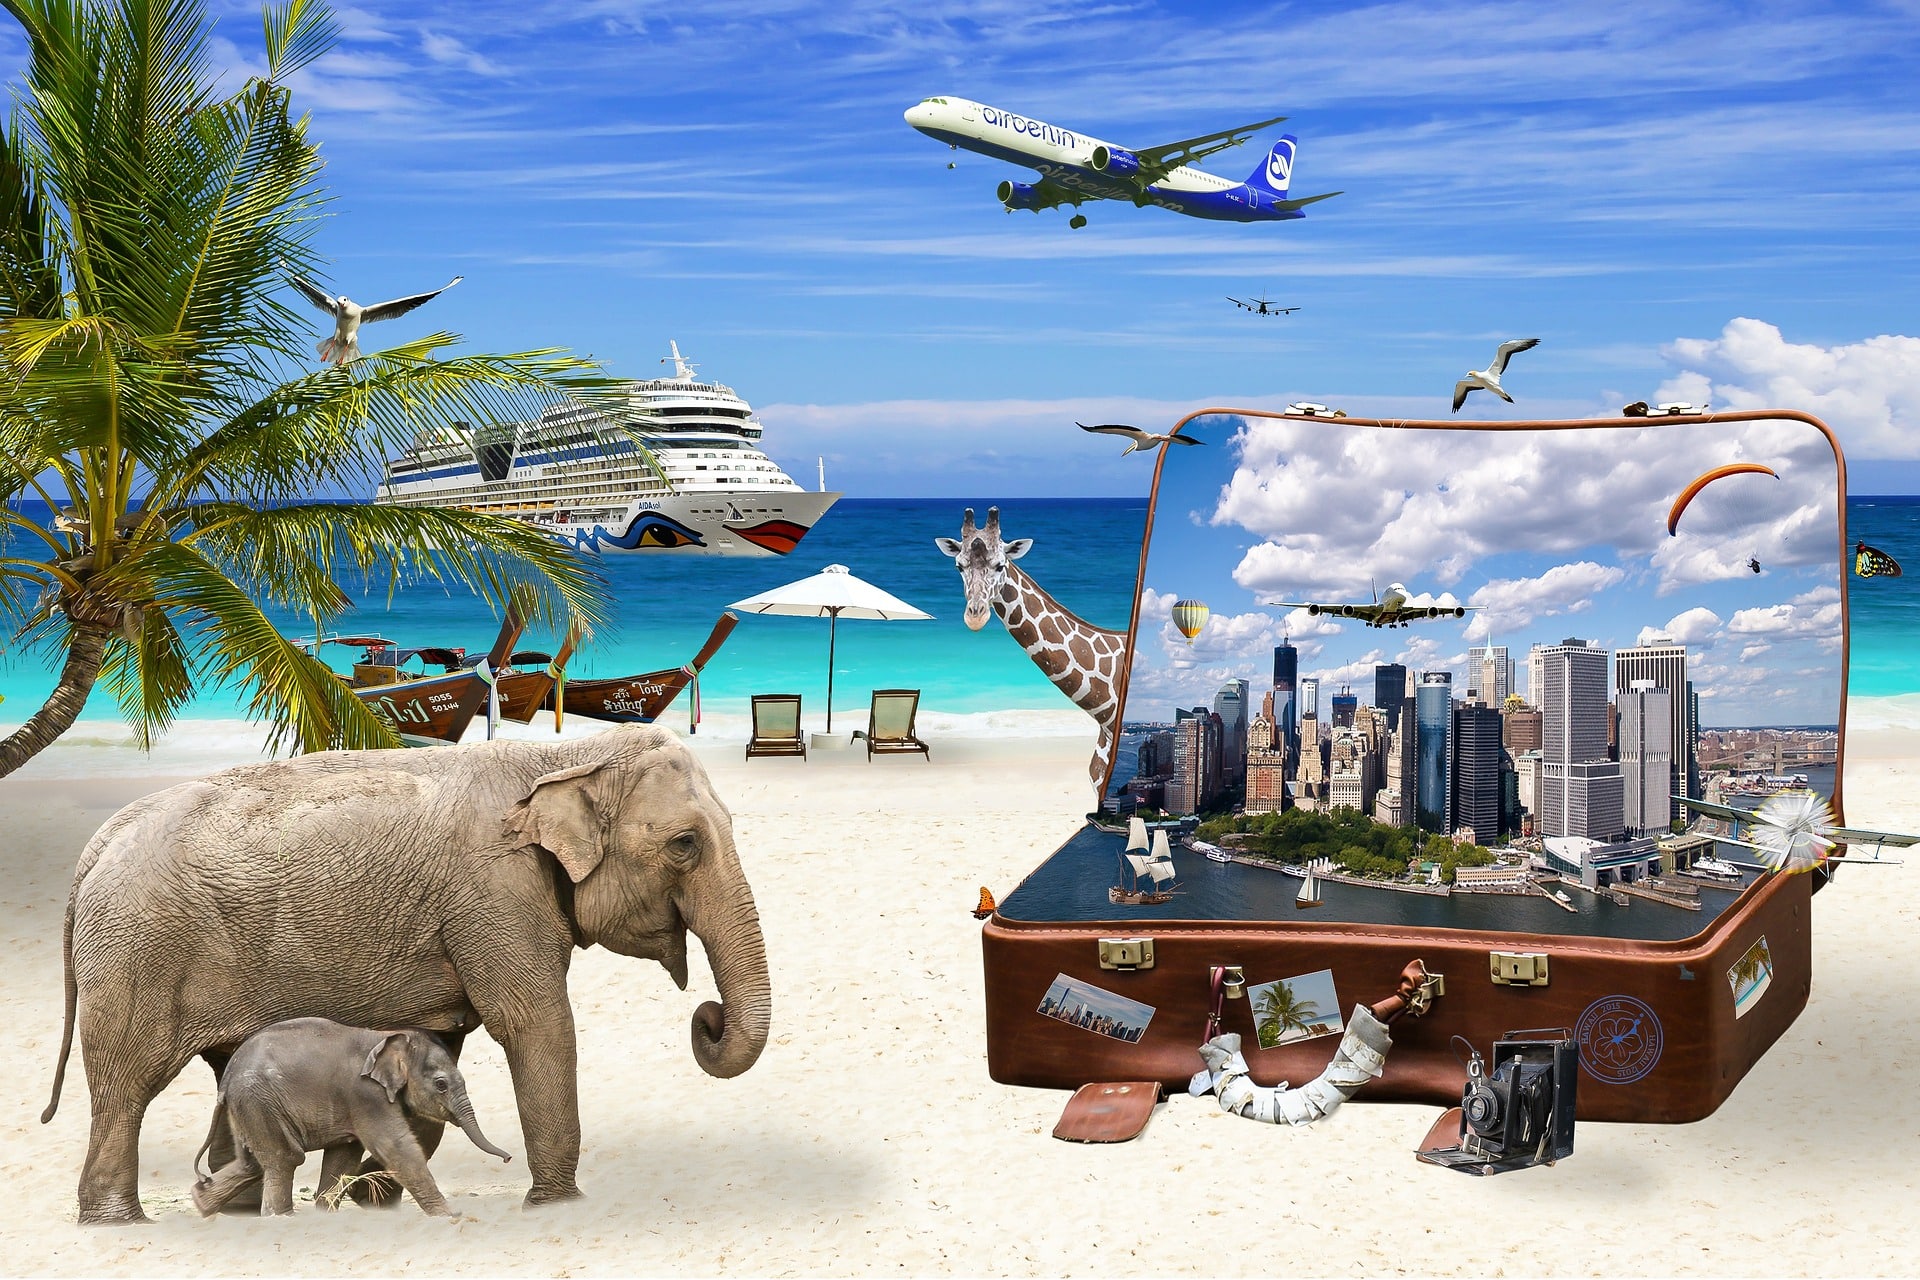 Urlaubscollage mit Bildern von Elefanten, Koffer, Palme, Flugzeug u.v.m.